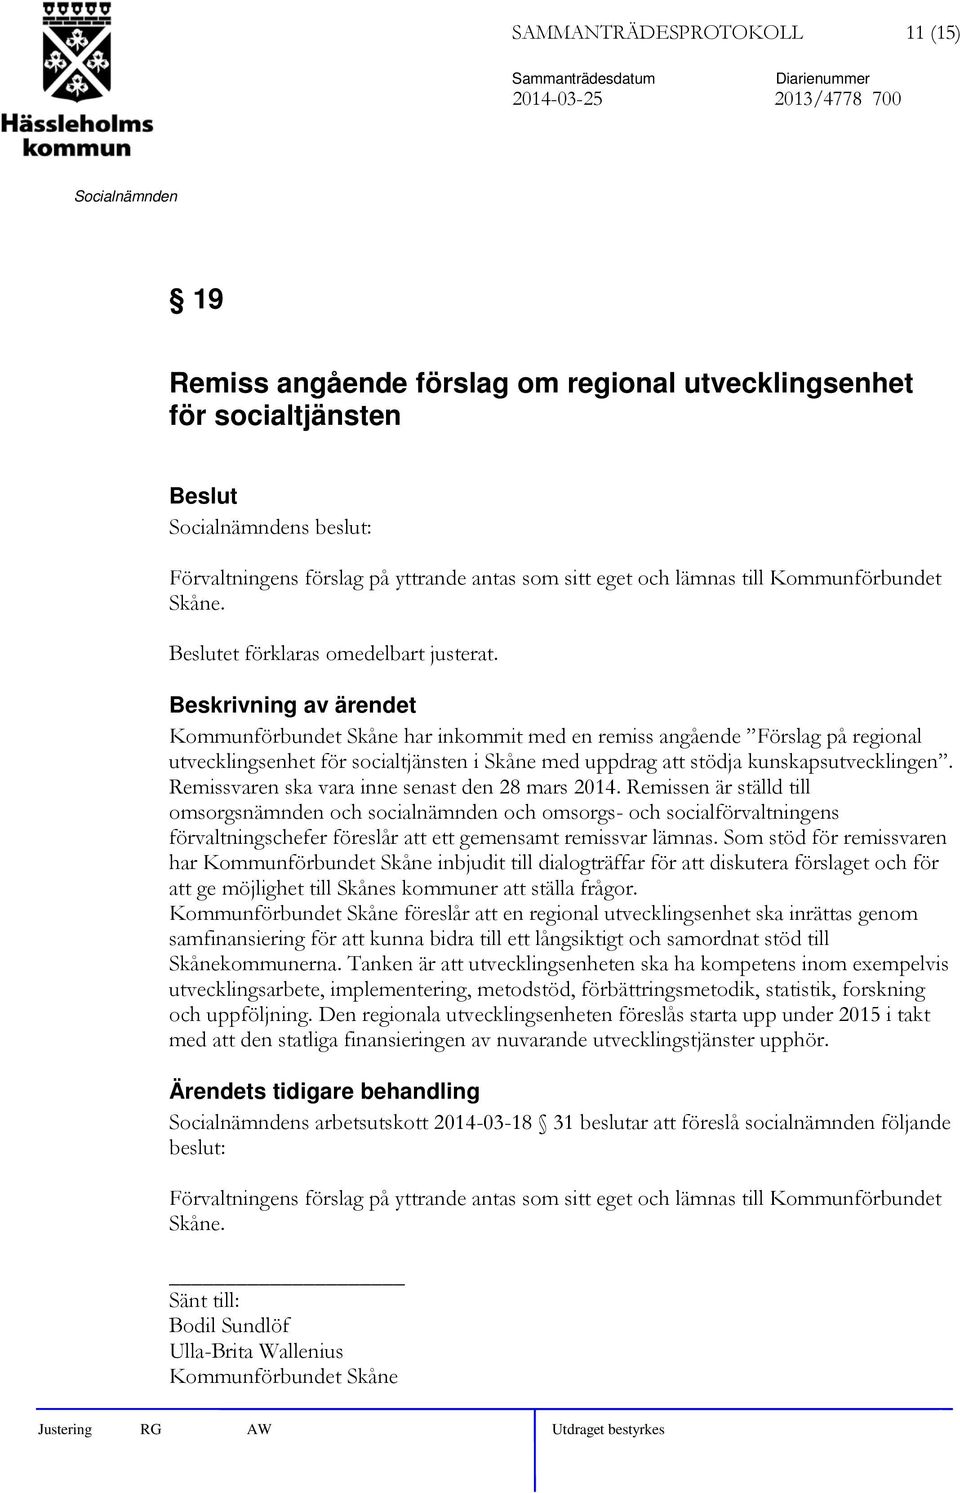 Kommunförbundet Skåne har inkommit med en remiss angående Förslag på regional utvecklingsenhet för socialtjänsten i Skåne med uppdrag att stödja kunskapsutvecklingen.